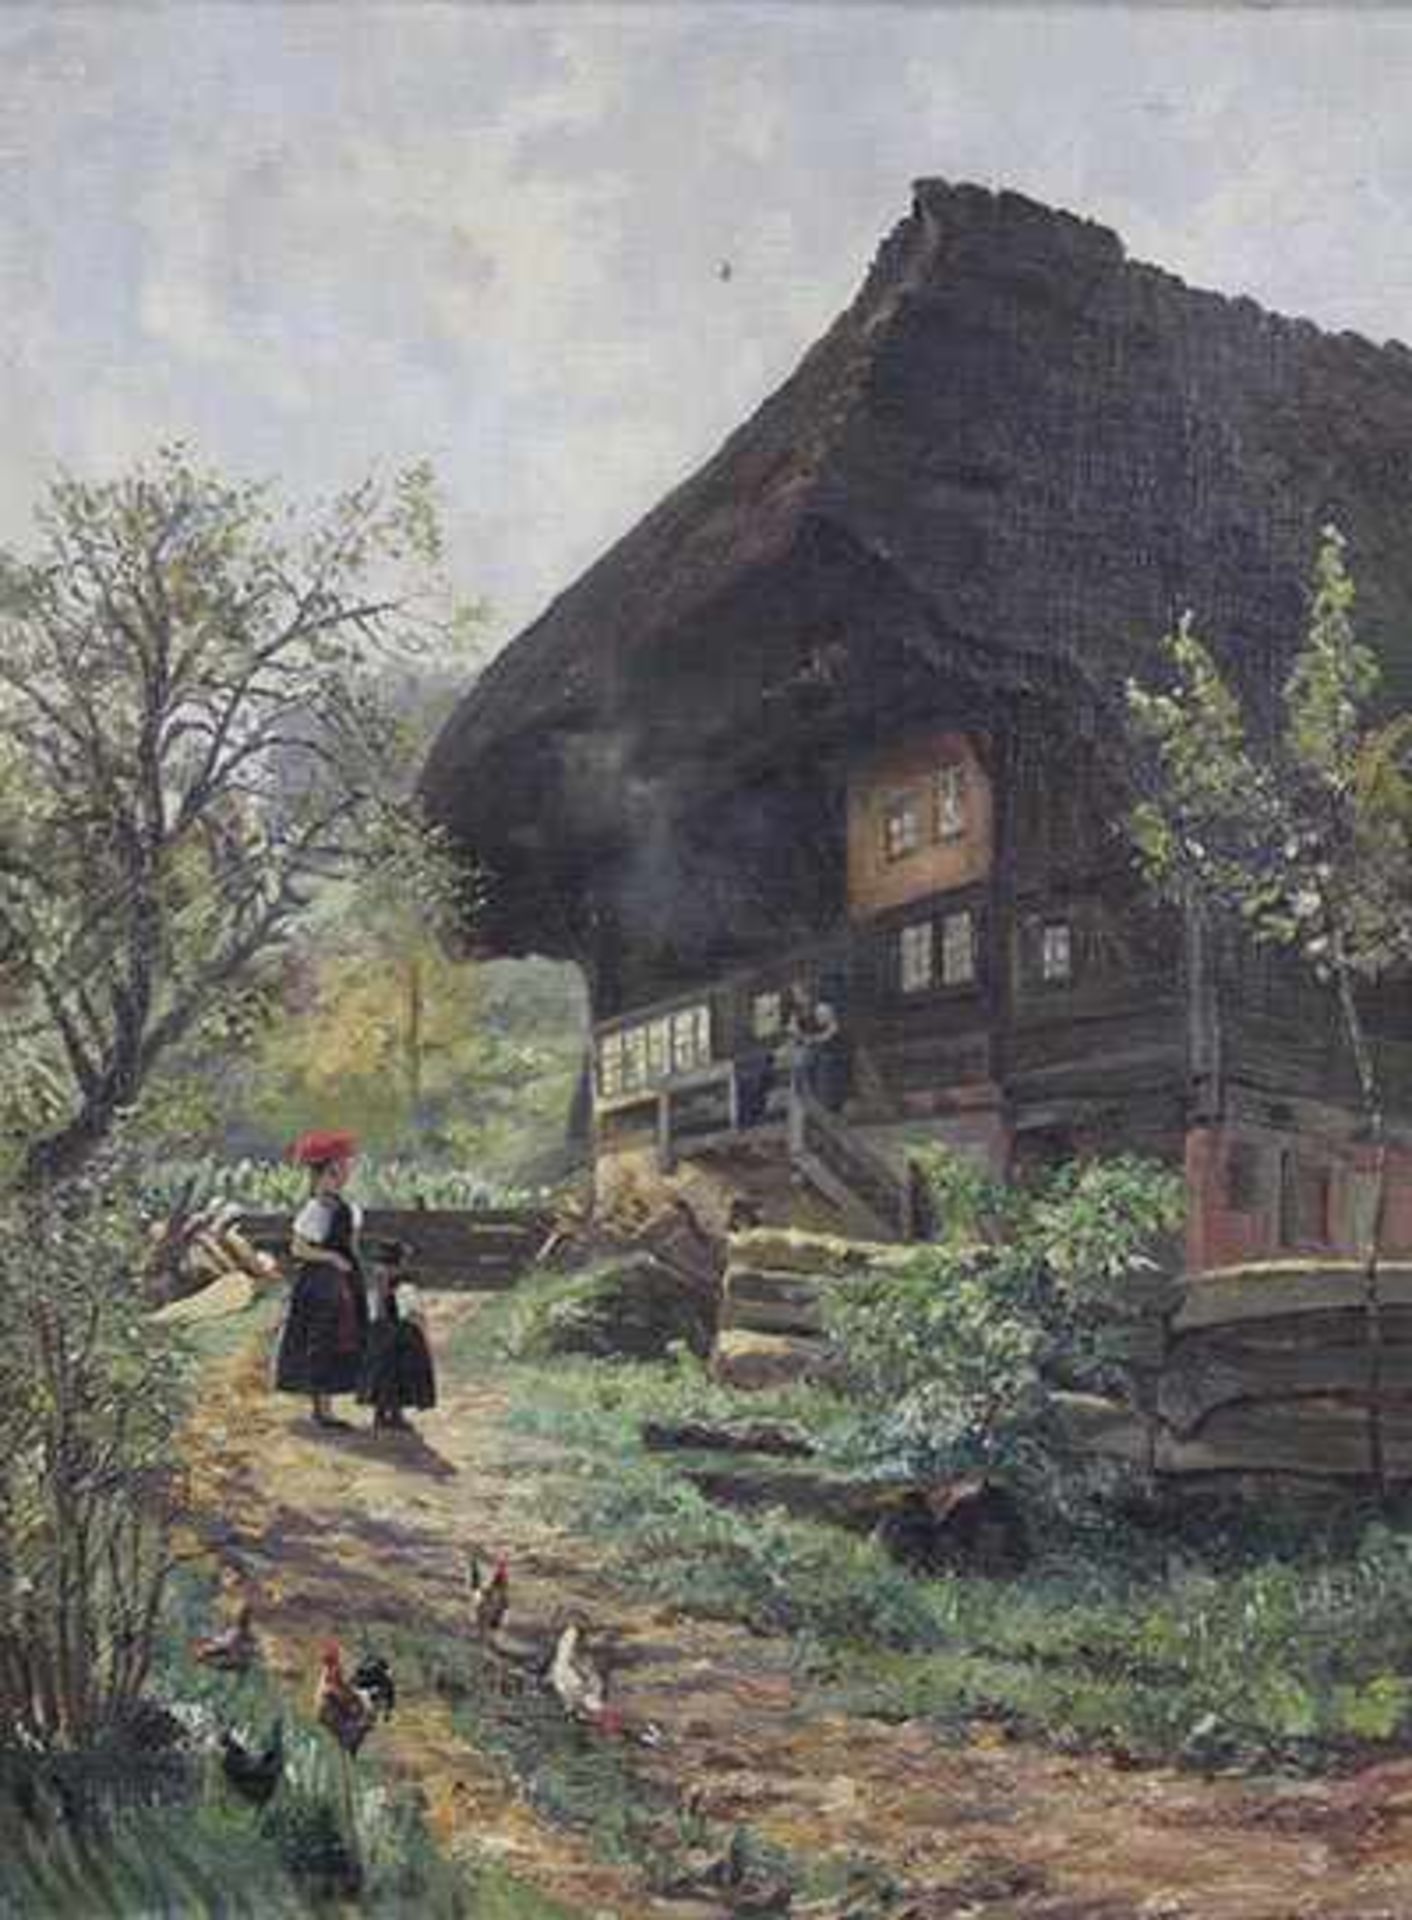 UNSIGNIERT (XIX - XX). Schwarzwald Mädchen vor strohgedecktem Haus.63 cm x 46 cm. Gemälde. Öl auf